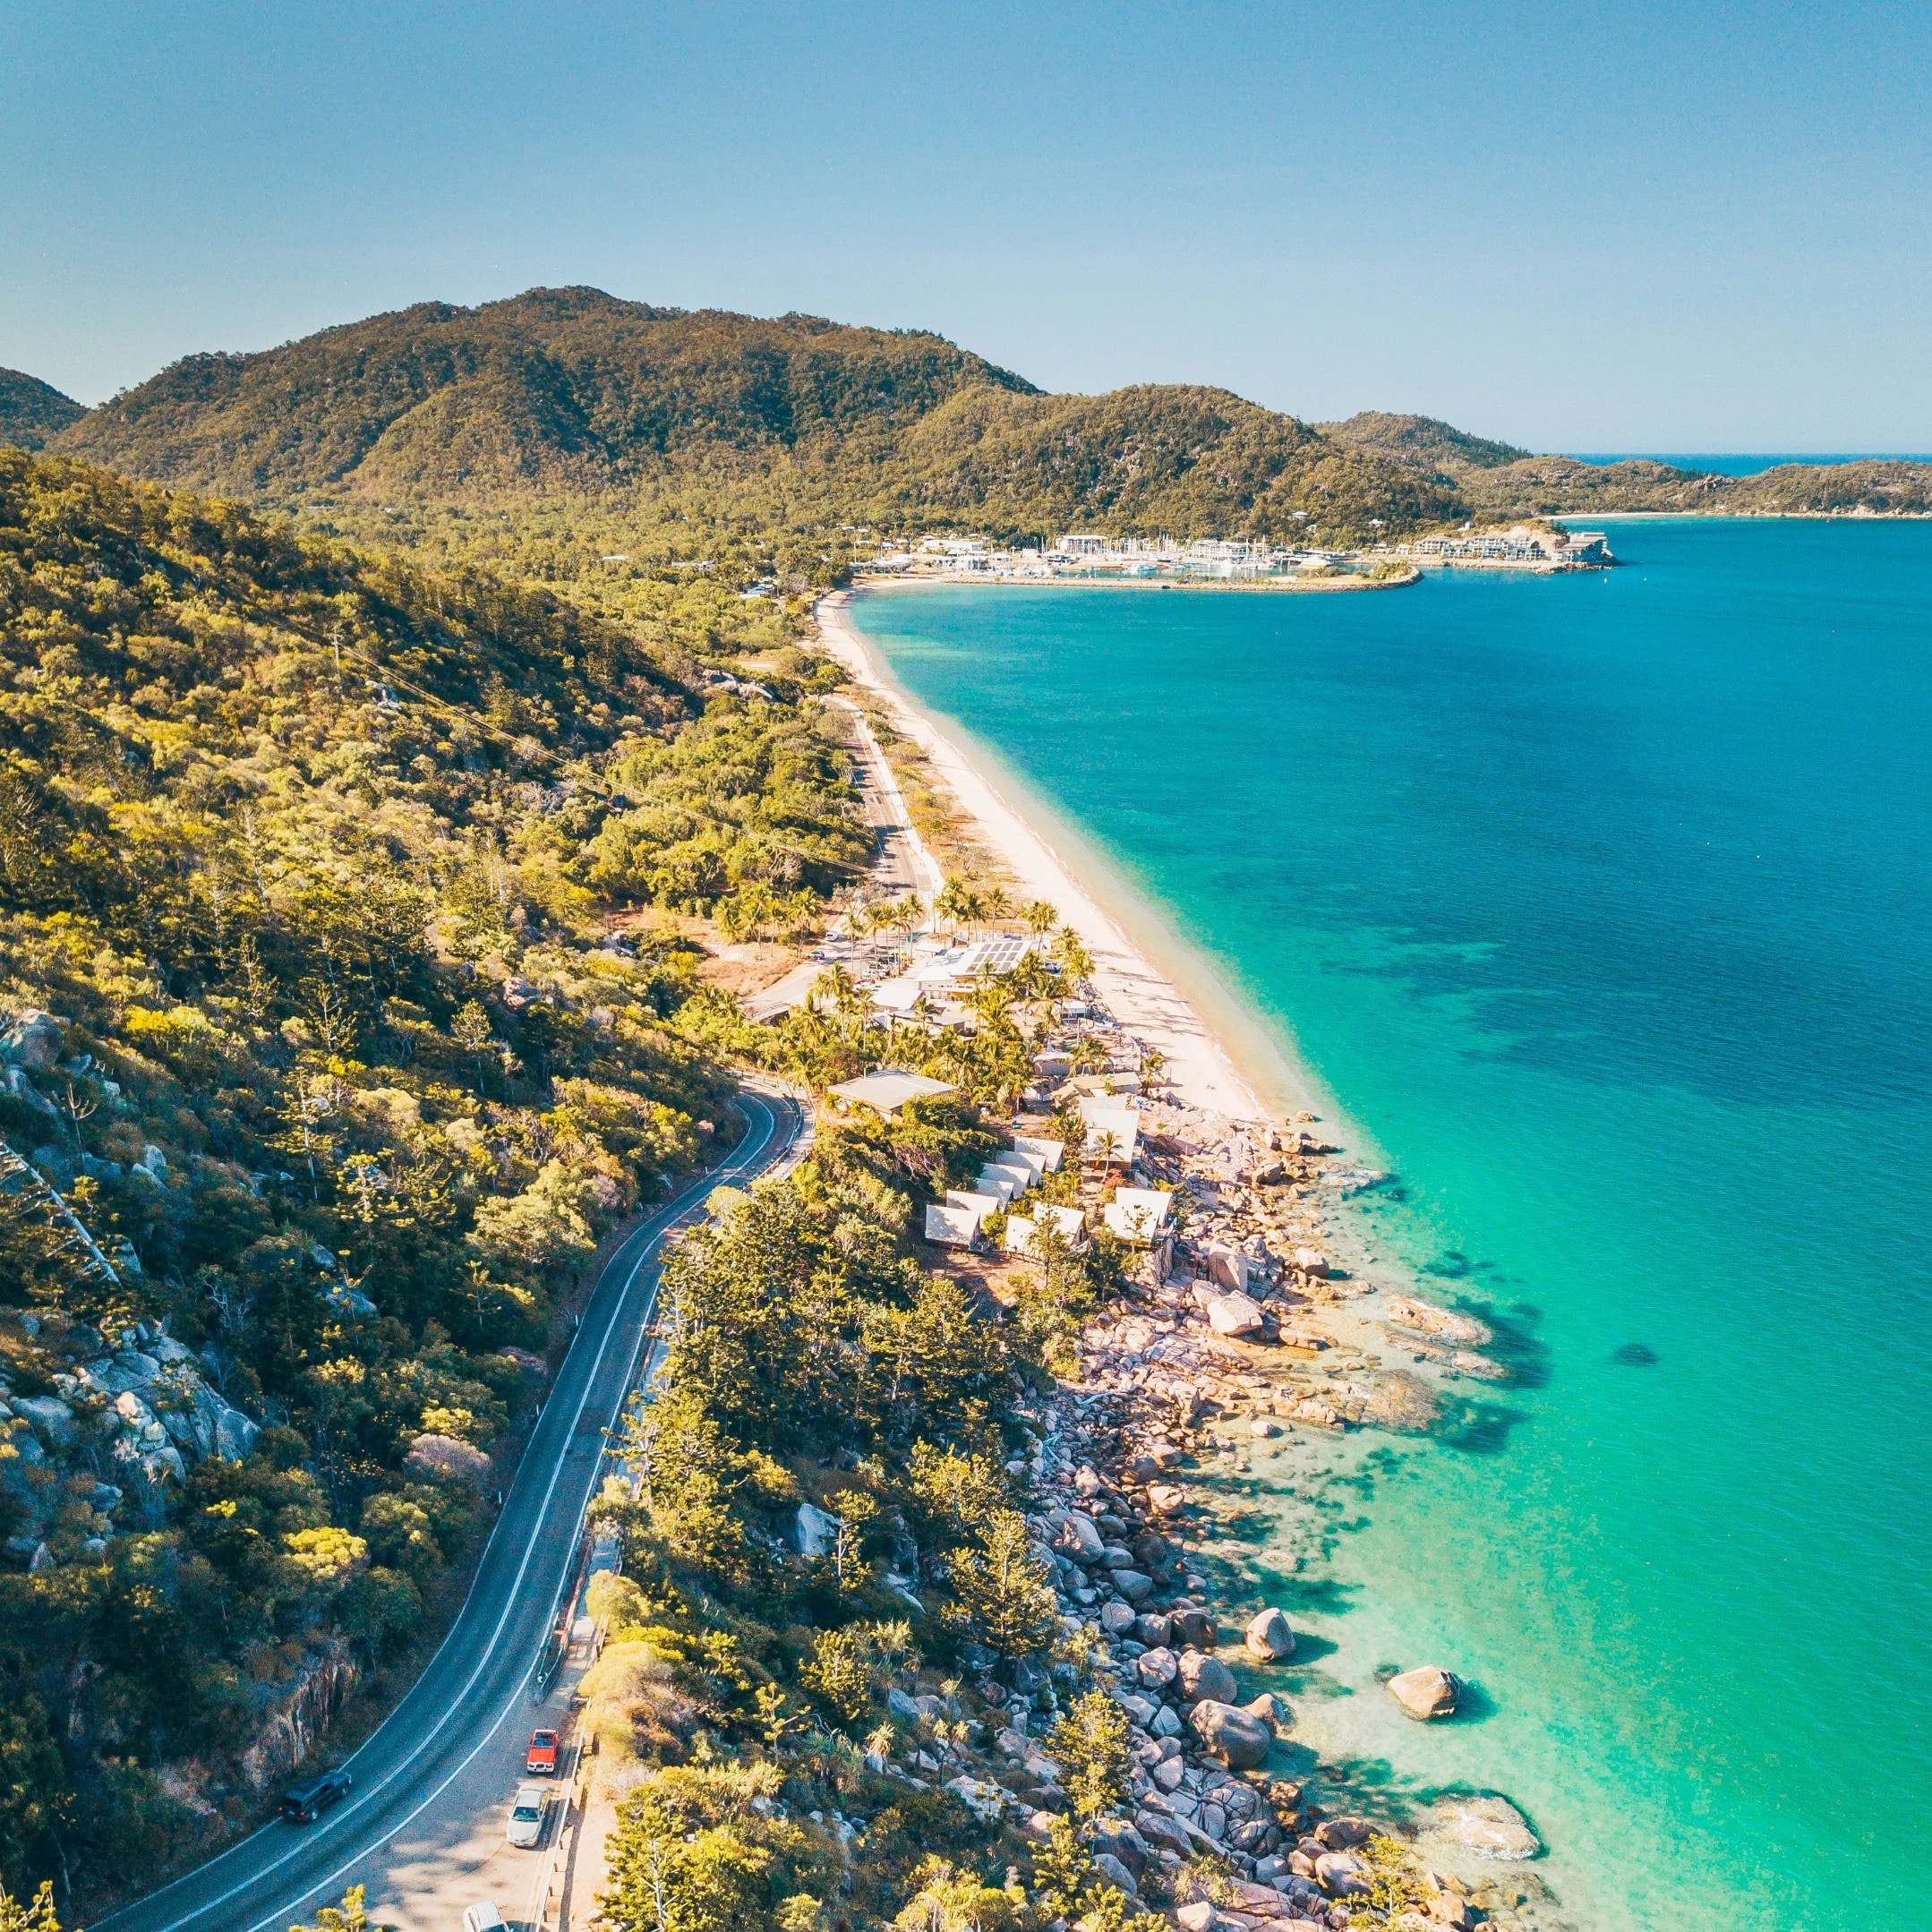 マグネティック島の海岸線に沿う道路の上空からの眺め © Tourism and Events Queensland